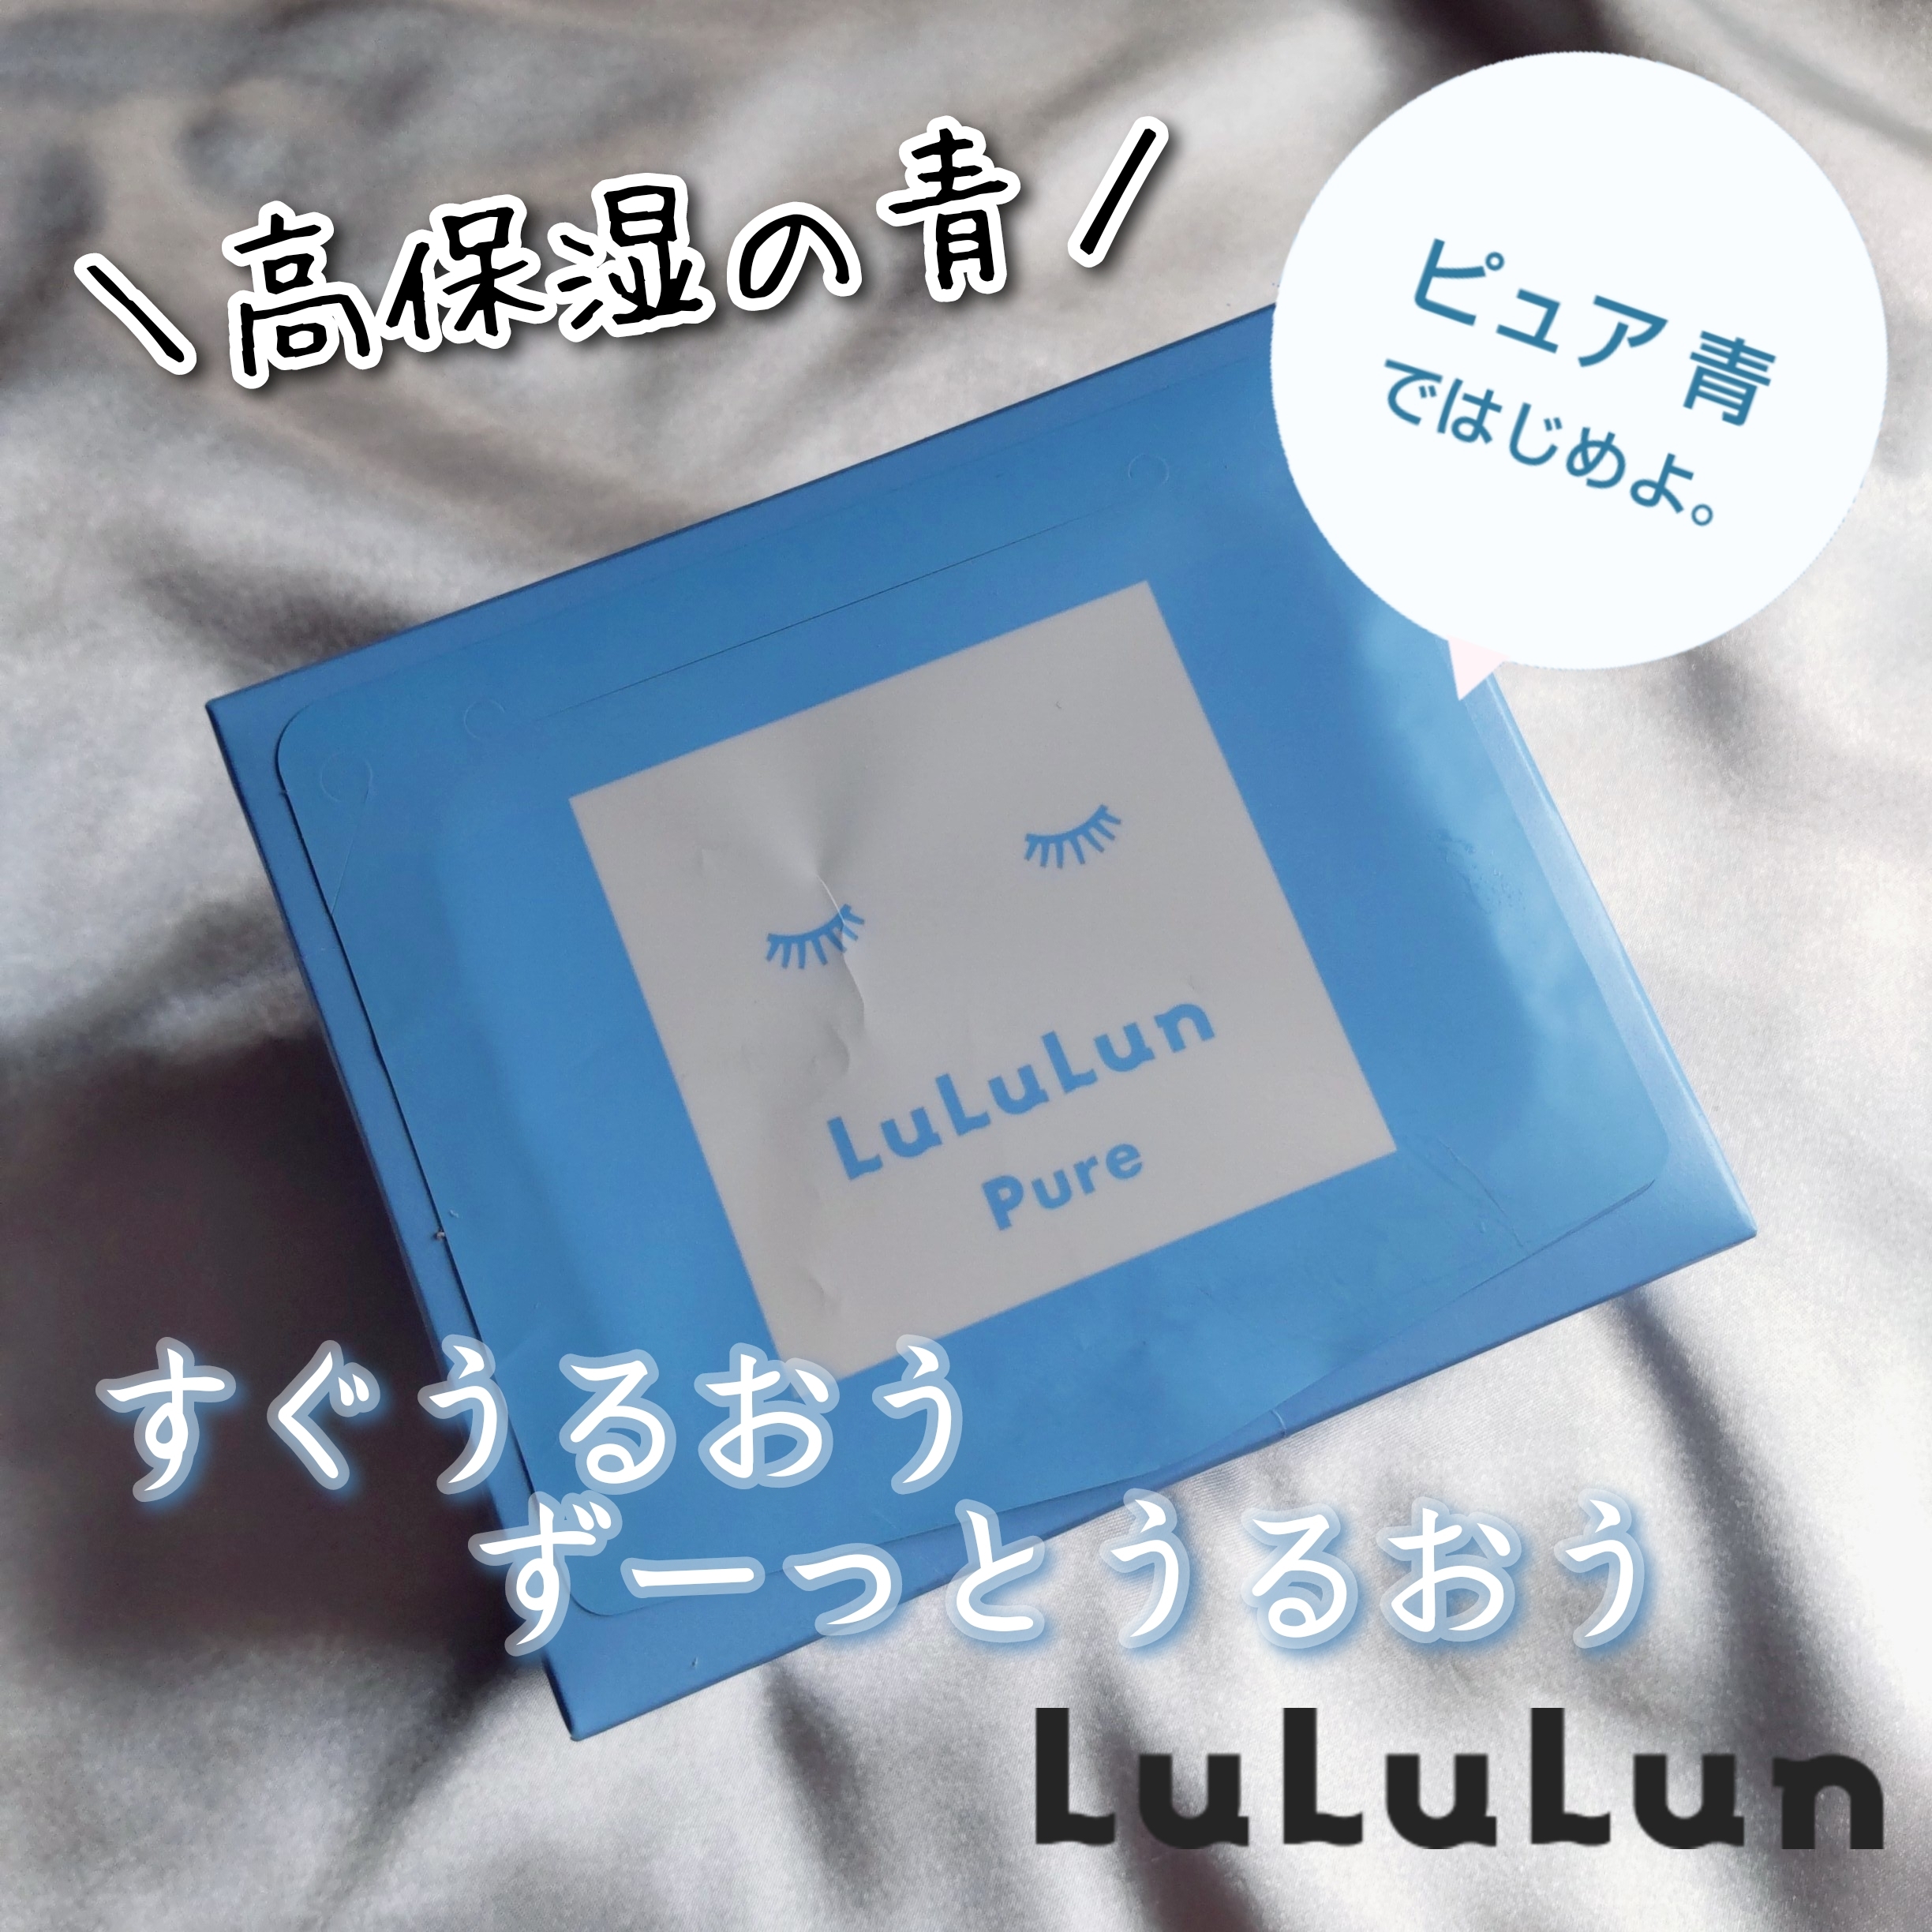 LuLuLun(ルルルン) ピュア 青(モイスト)の良い点・メリットに関するまるもふさんの口コミ画像1